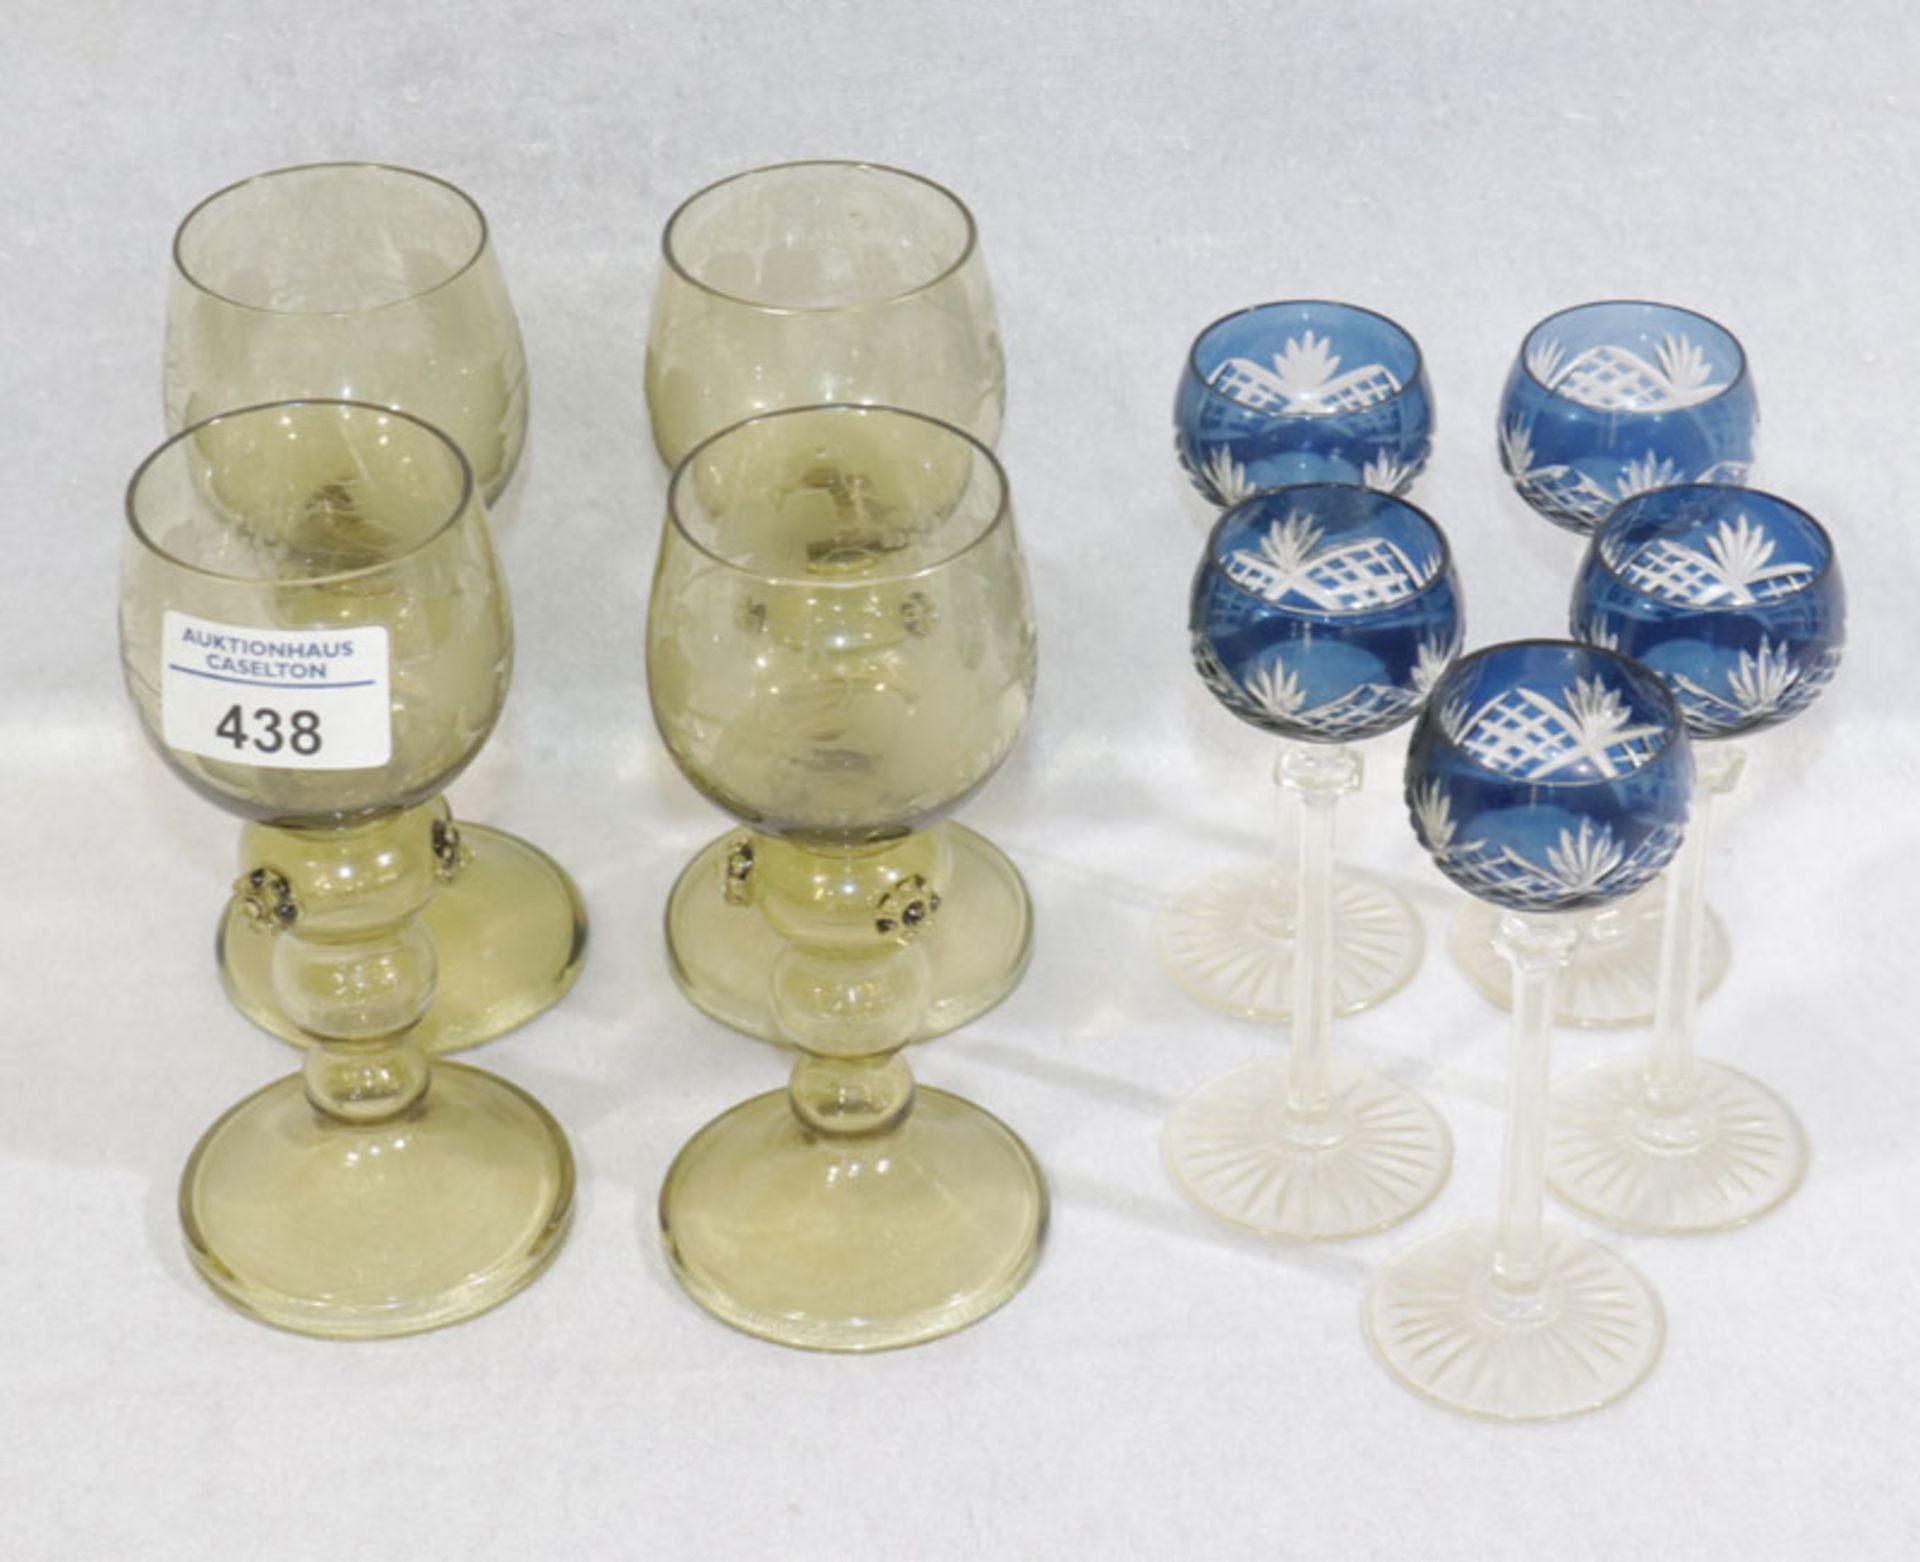 4 Theresienthal Weingläser mit Weinlaubgravur und Noppendekor, H 15,5 cm, D 7 cm, ein Glas